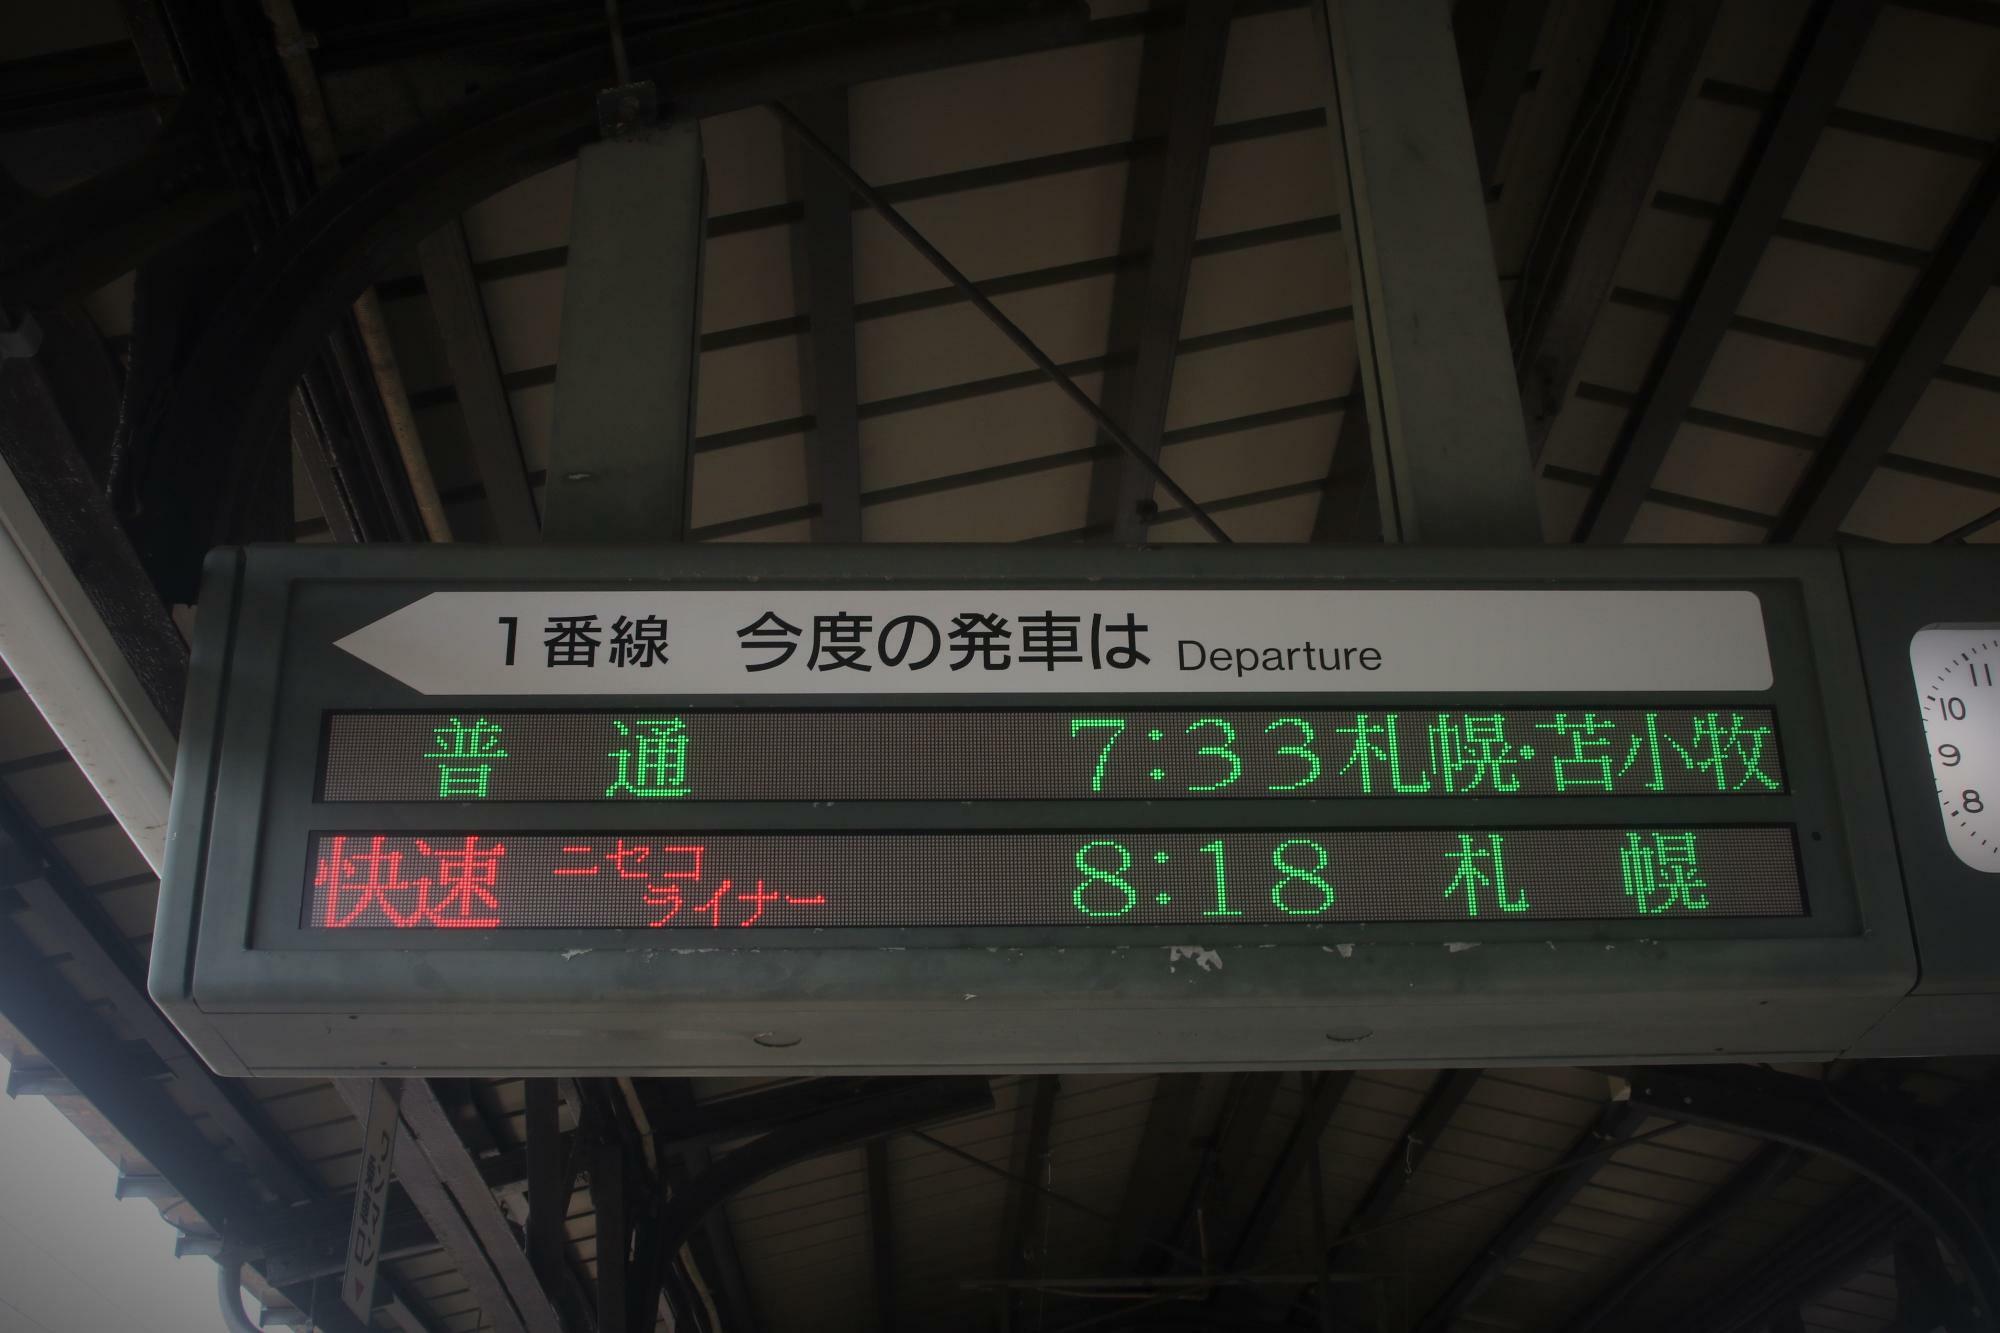 7:33発札幌方面苫小牧行き普通列車